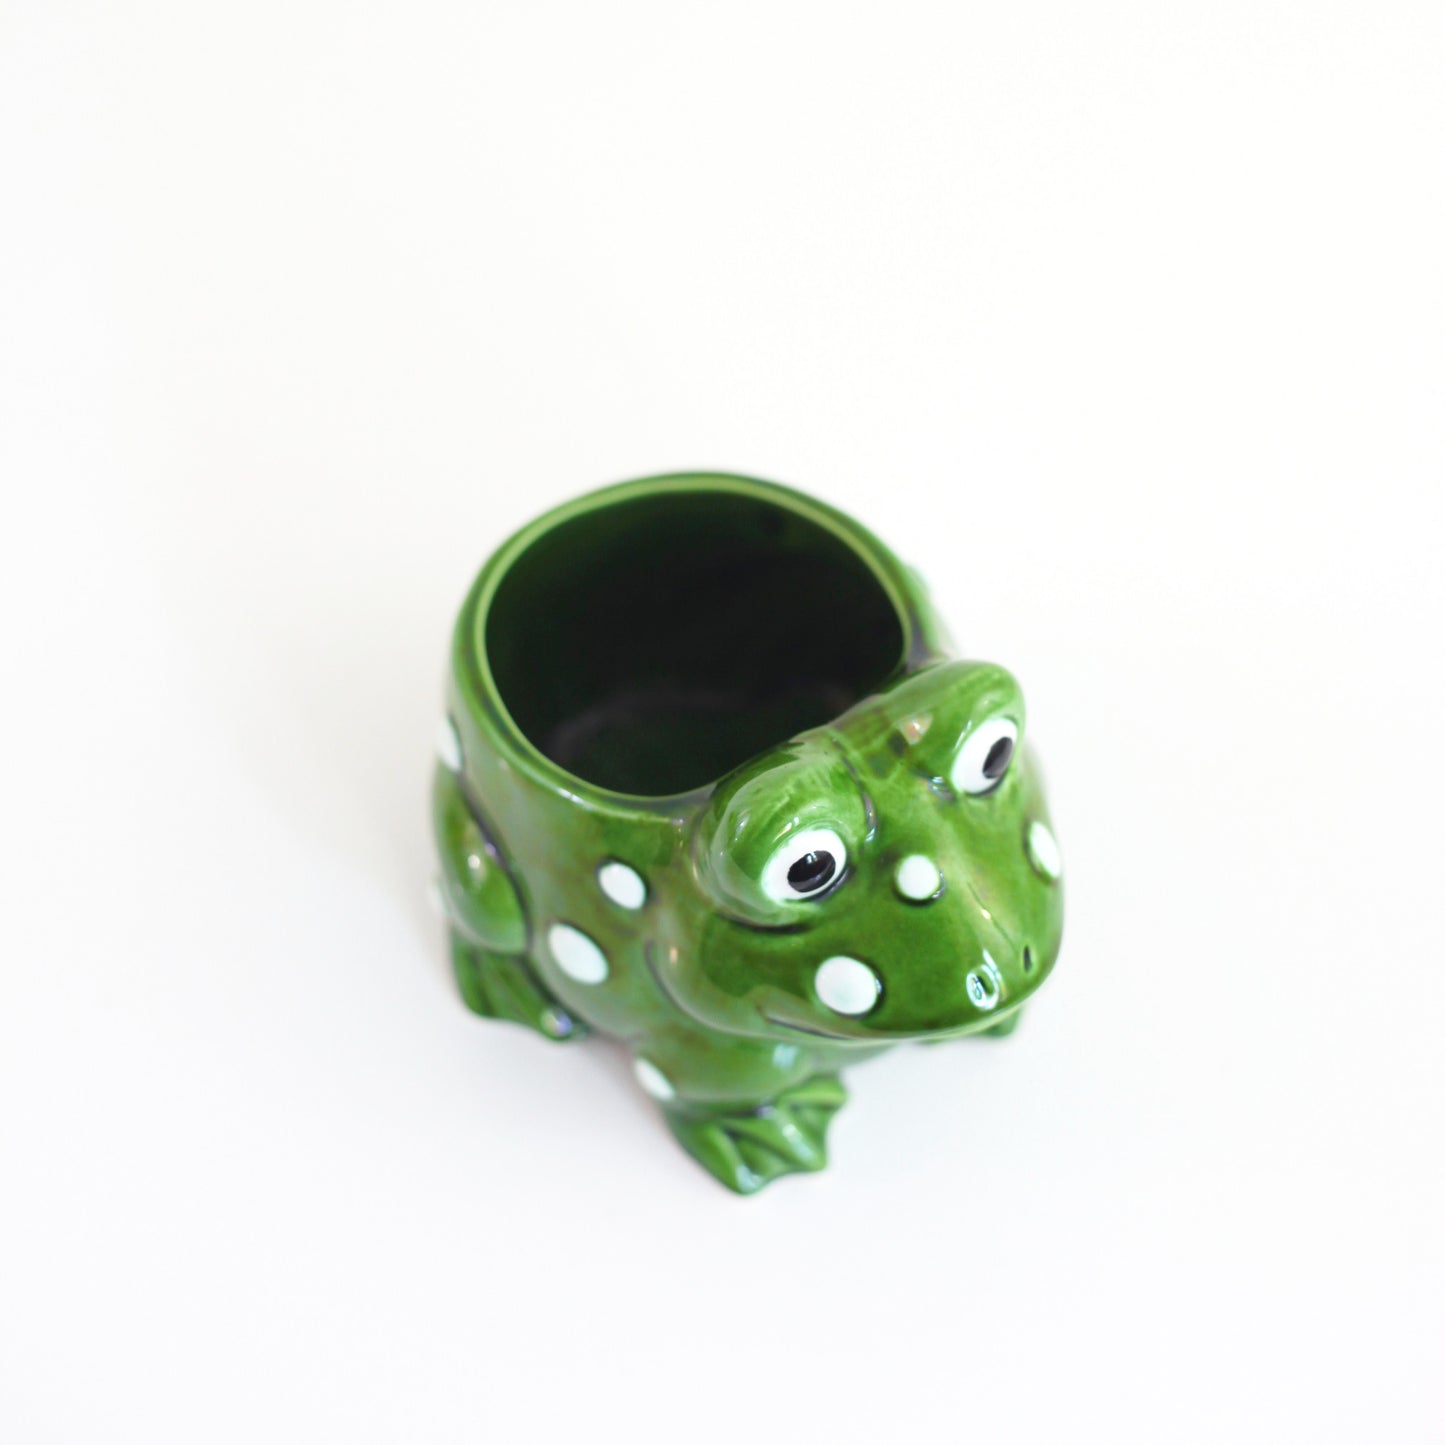 SOLD - Vintage Ceramic Frog Planter